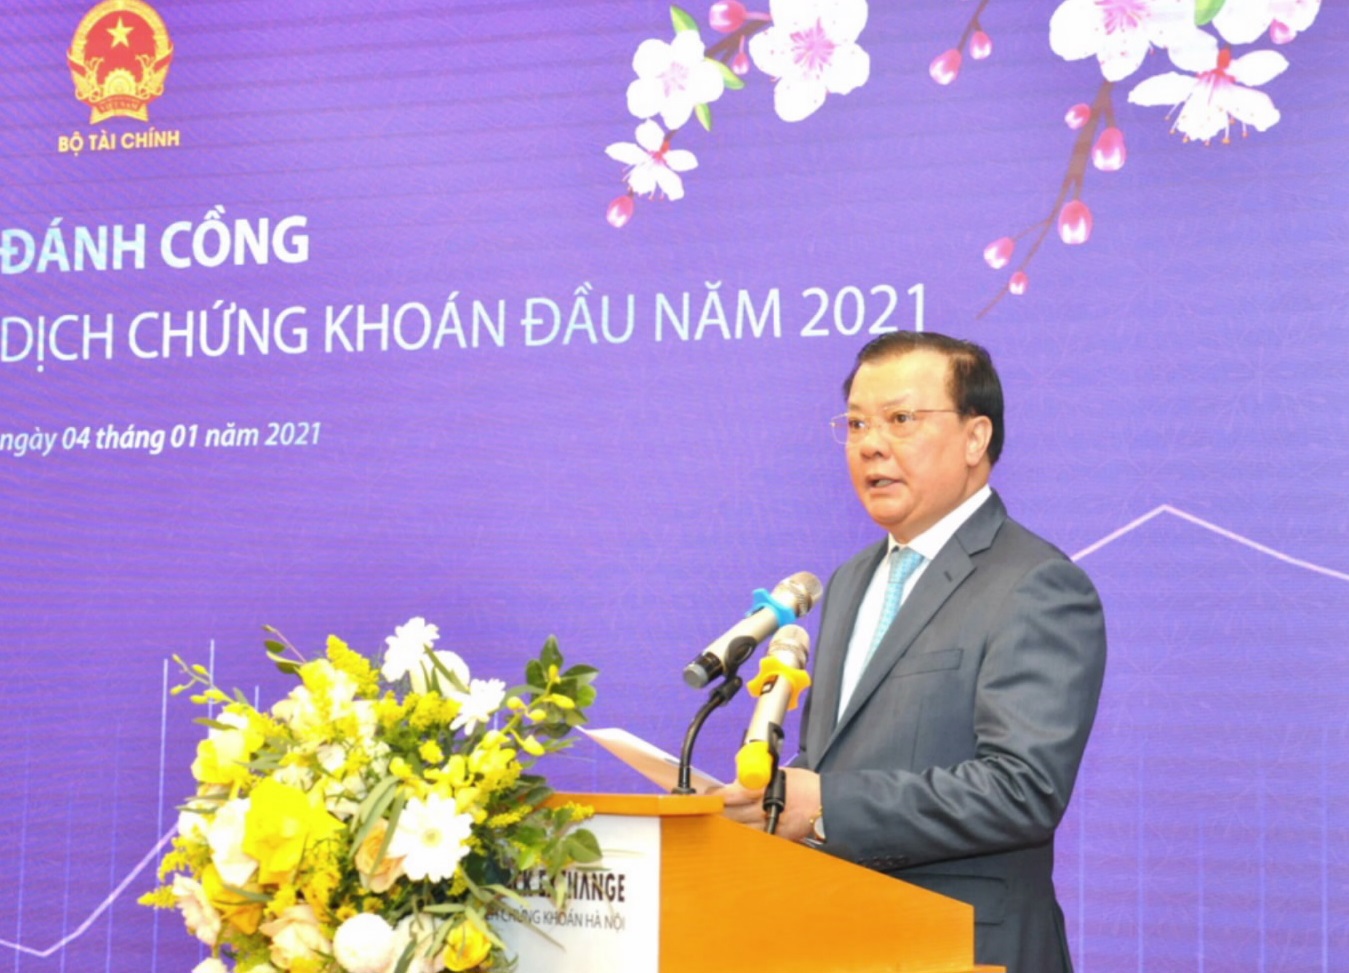  Bộ trưởng Bộ Tài chính Đinh Tiến Dũng phát biểu tại Lễ đánh cồng khai trương phiên giao dịch chứng khoán đầu tiên của năm 2021.